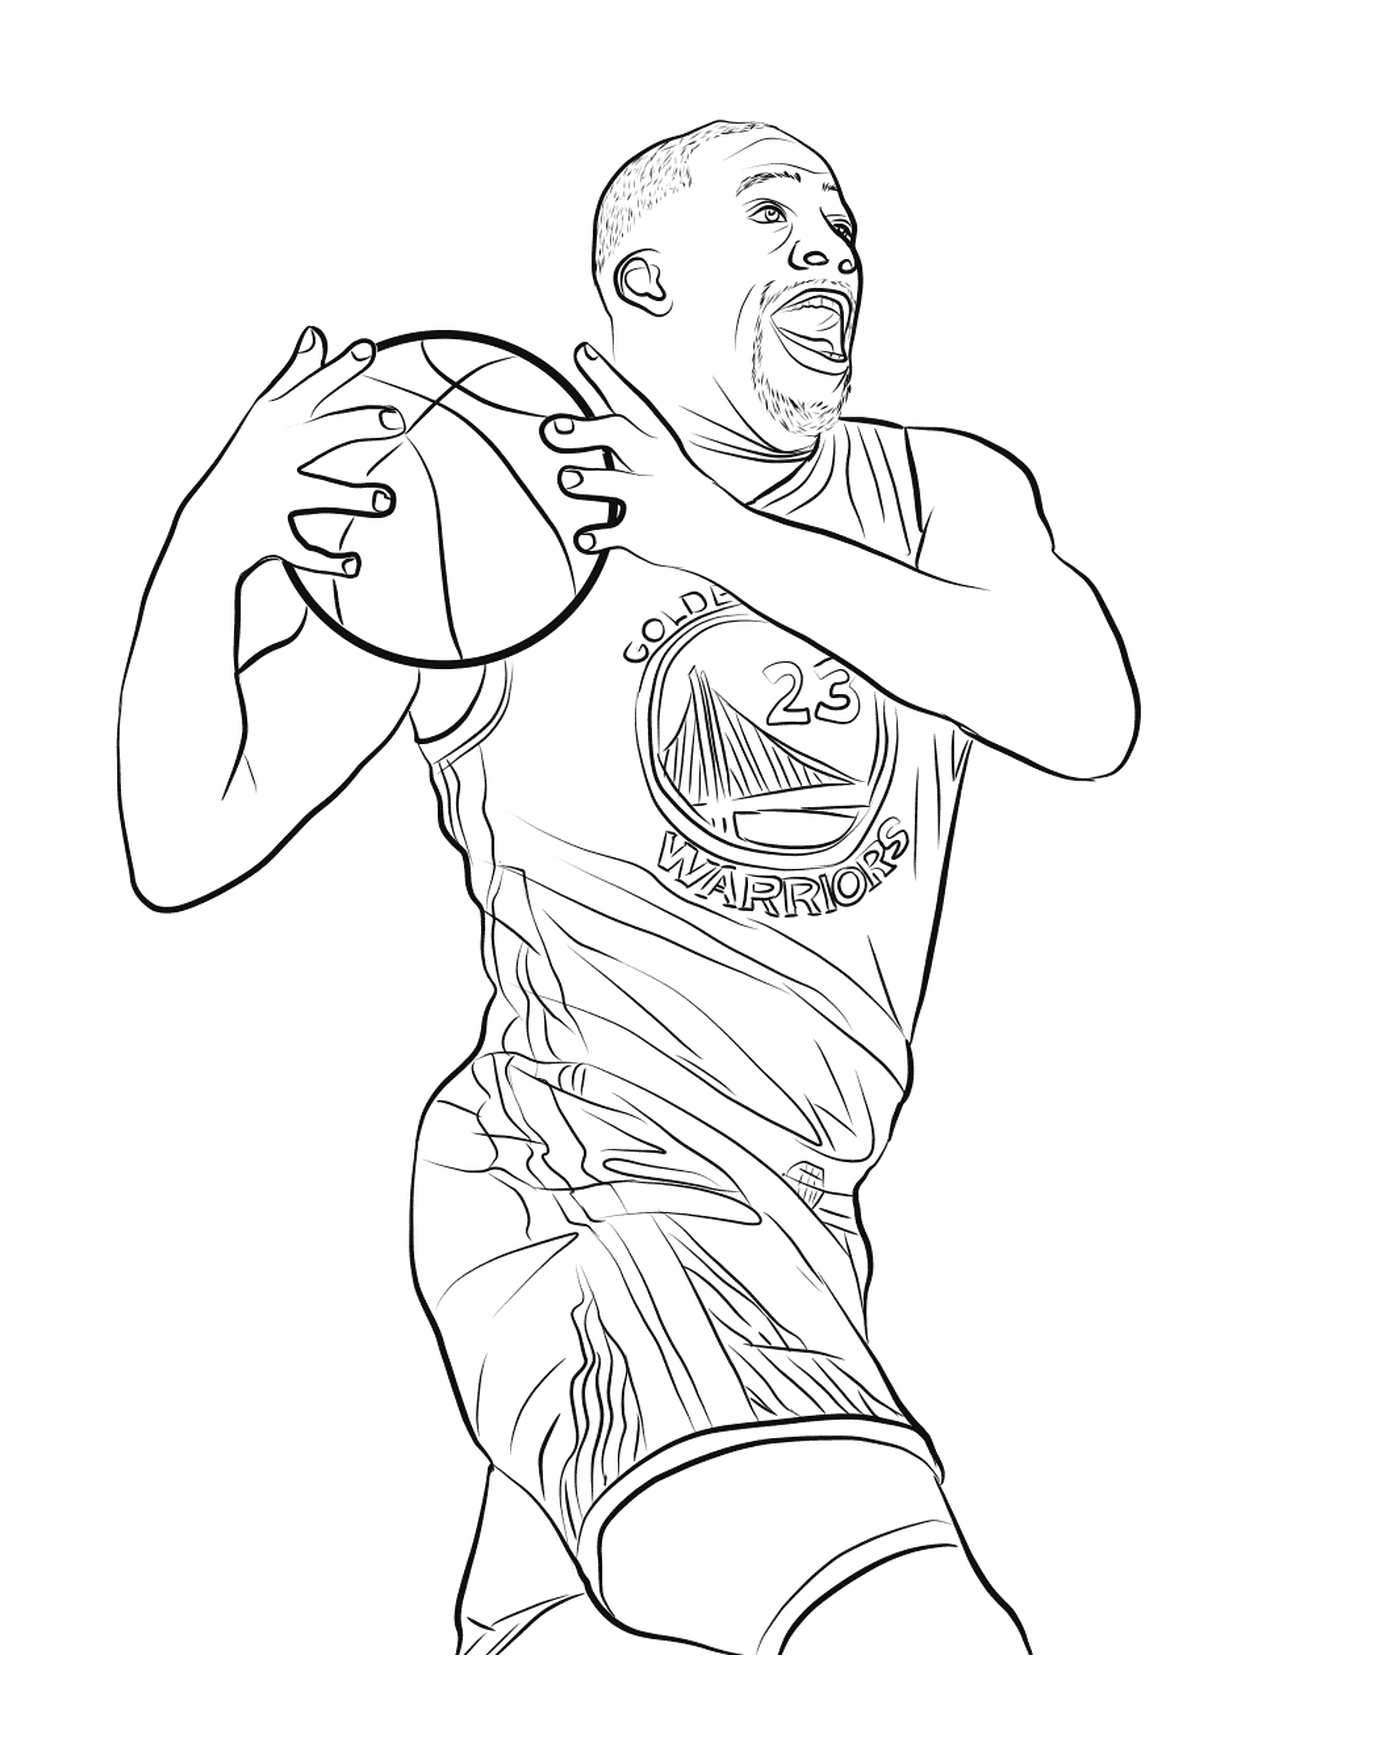  Дреймонд Грин держит баскетбольный мяч 